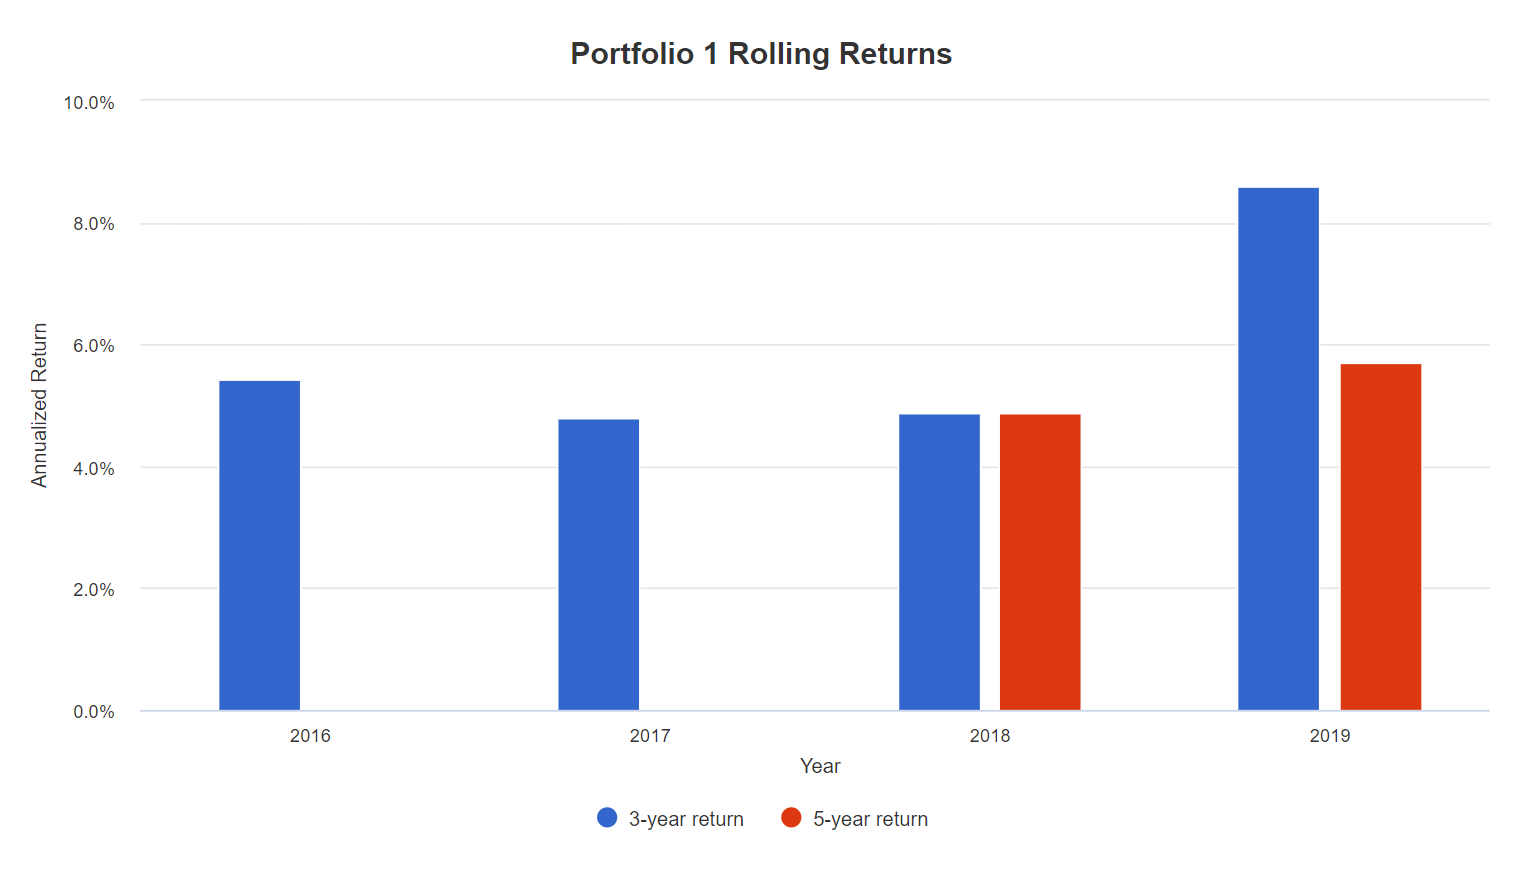 Вкладка Rolling Returns, скользящая доходность за 3 и 5 лет